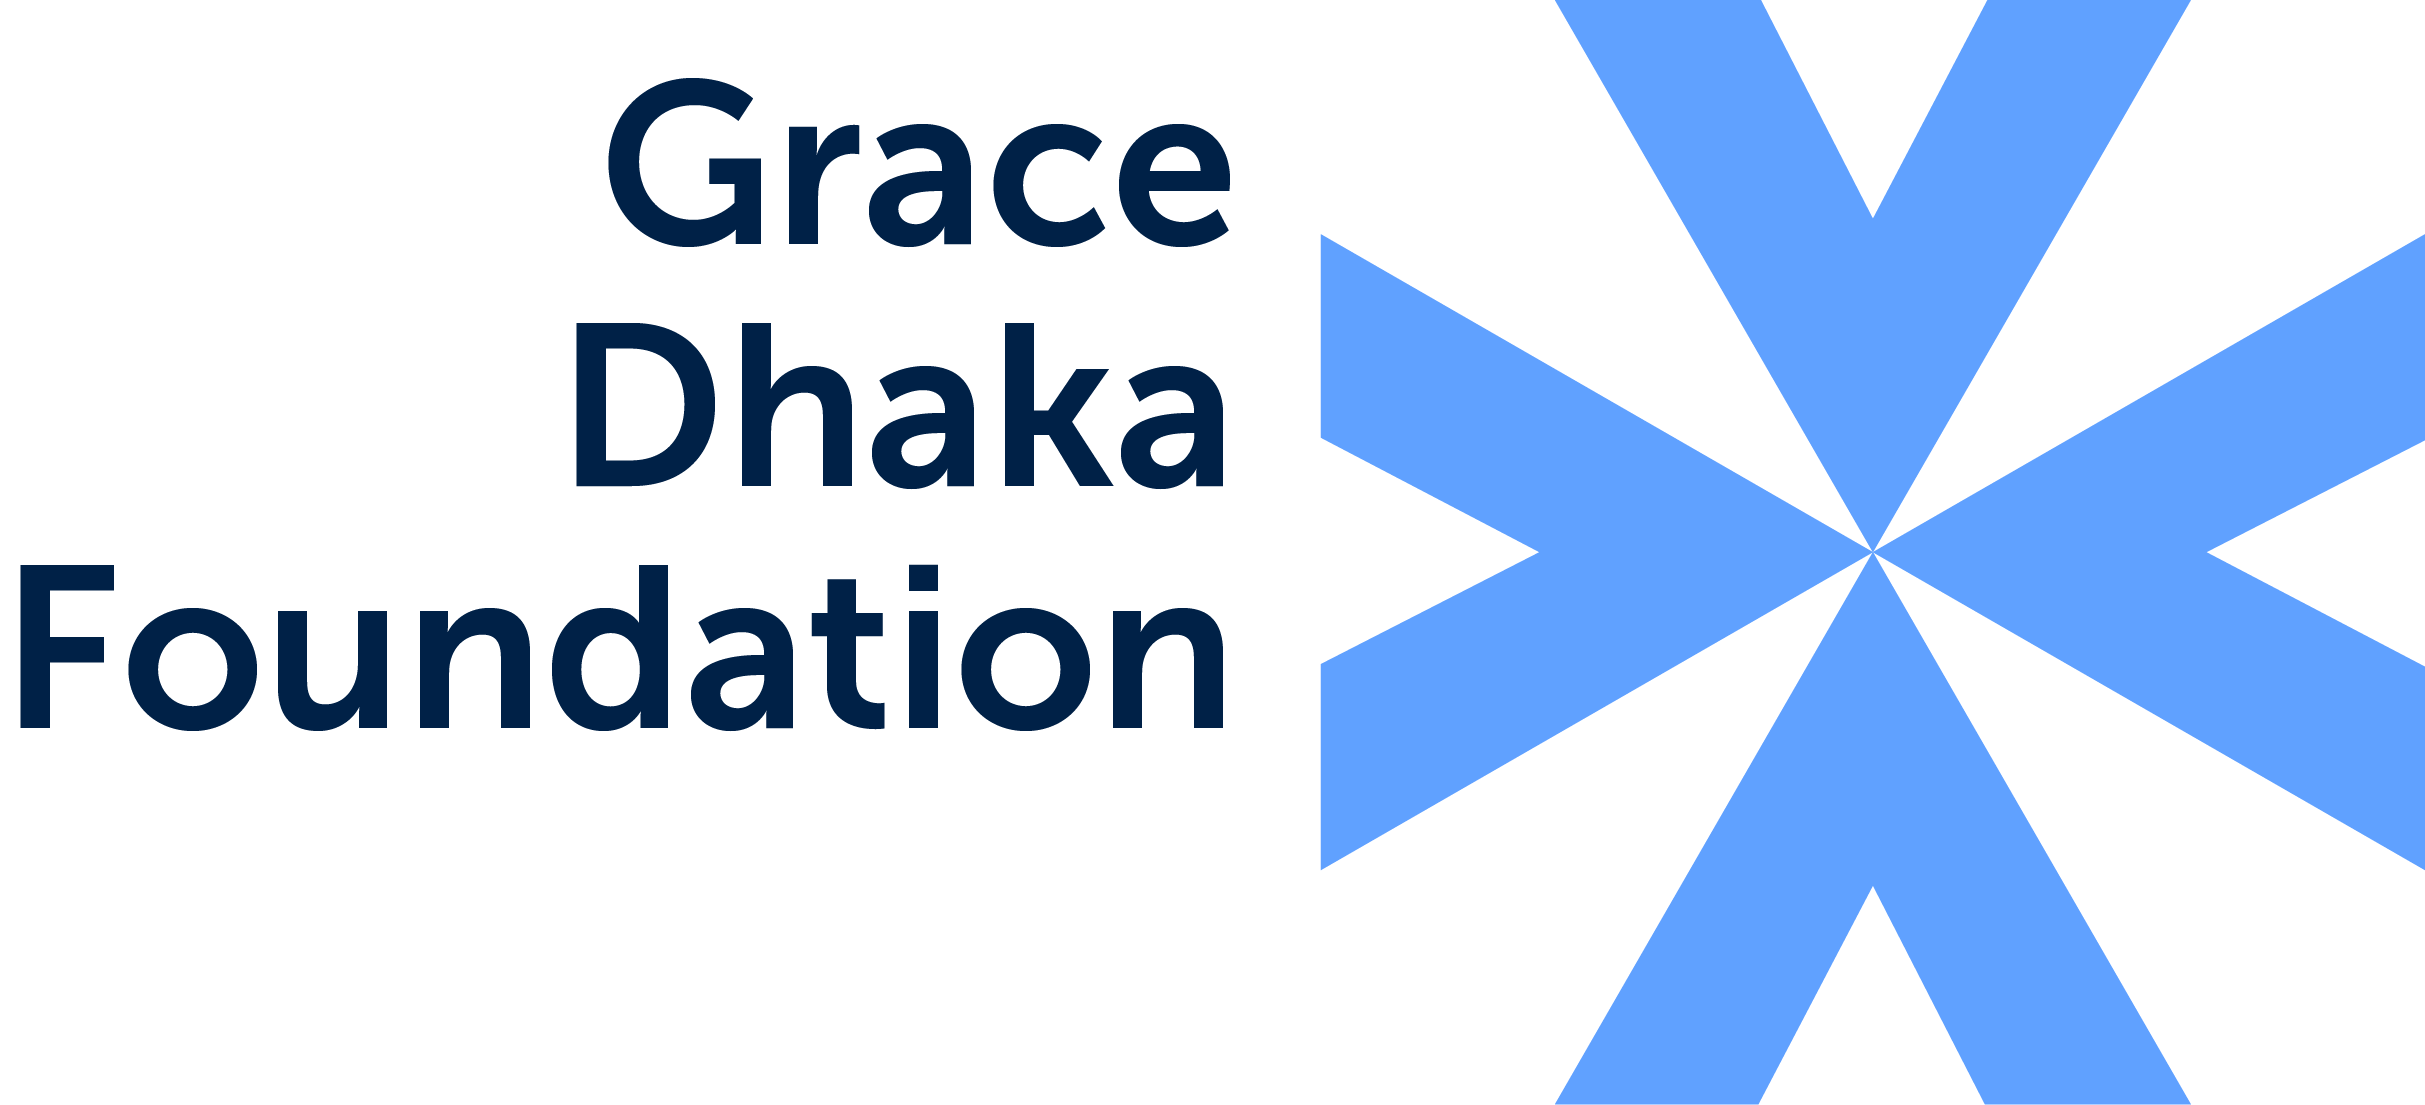 Grace Dhaka Foundation